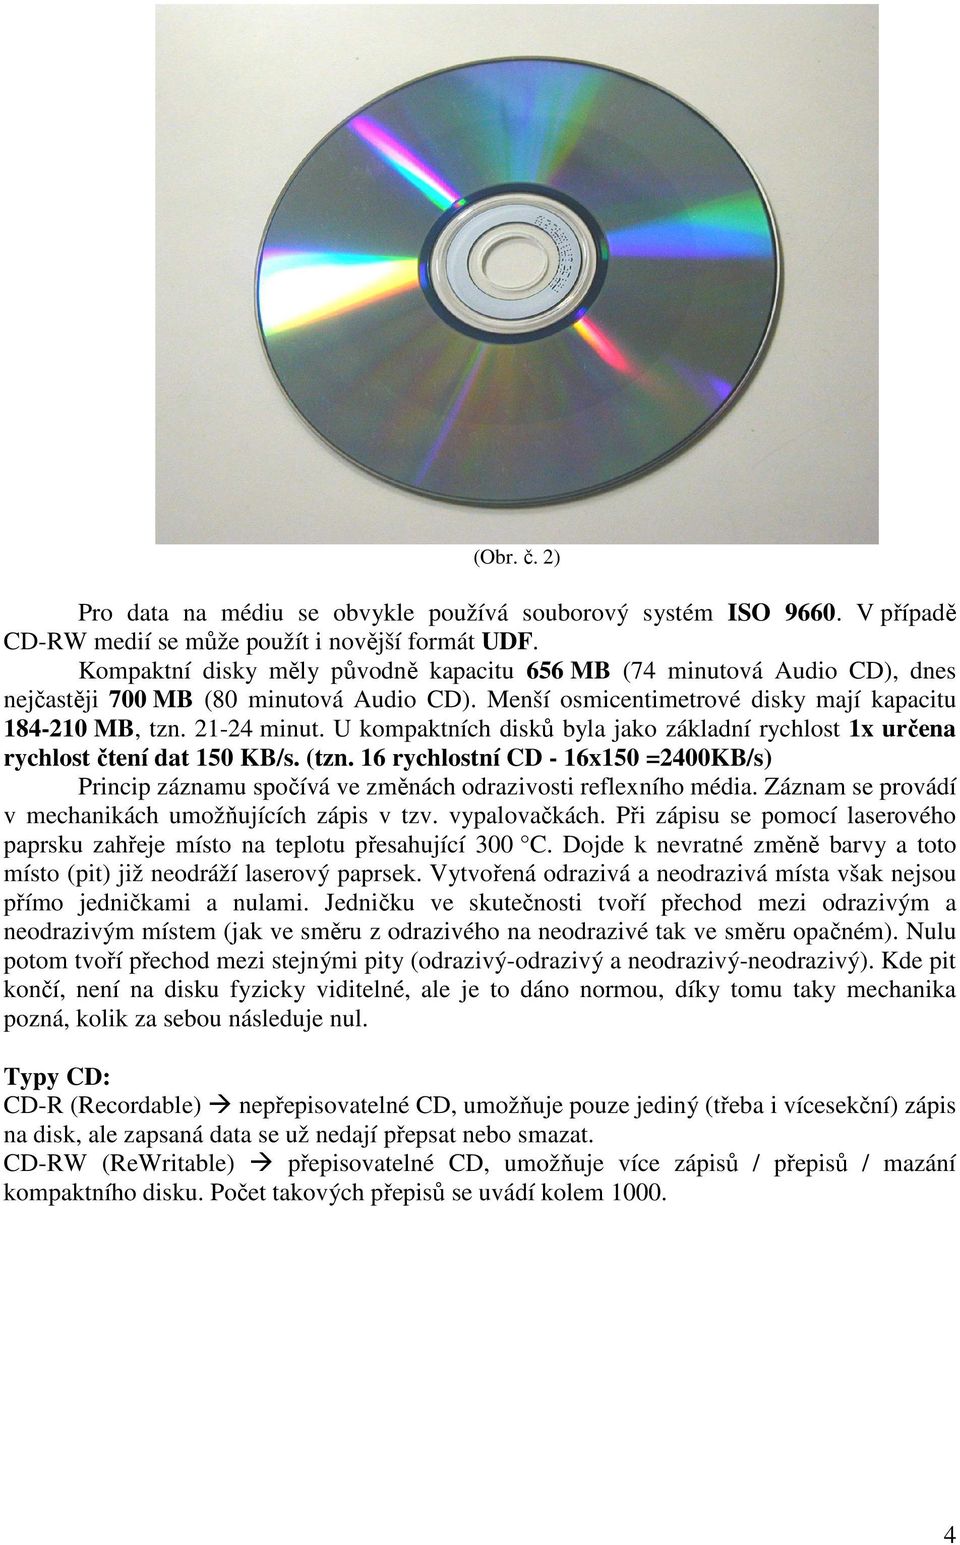 U kompaktních disků byla jako základní rychlost 1x určena rychlost čtení dat 150 KB/s. (tzn. 16 rychlostní CD - 16x150 =2400KB/s) Princip záznamu spočívá ve změnách odrazivosti reflexního média.